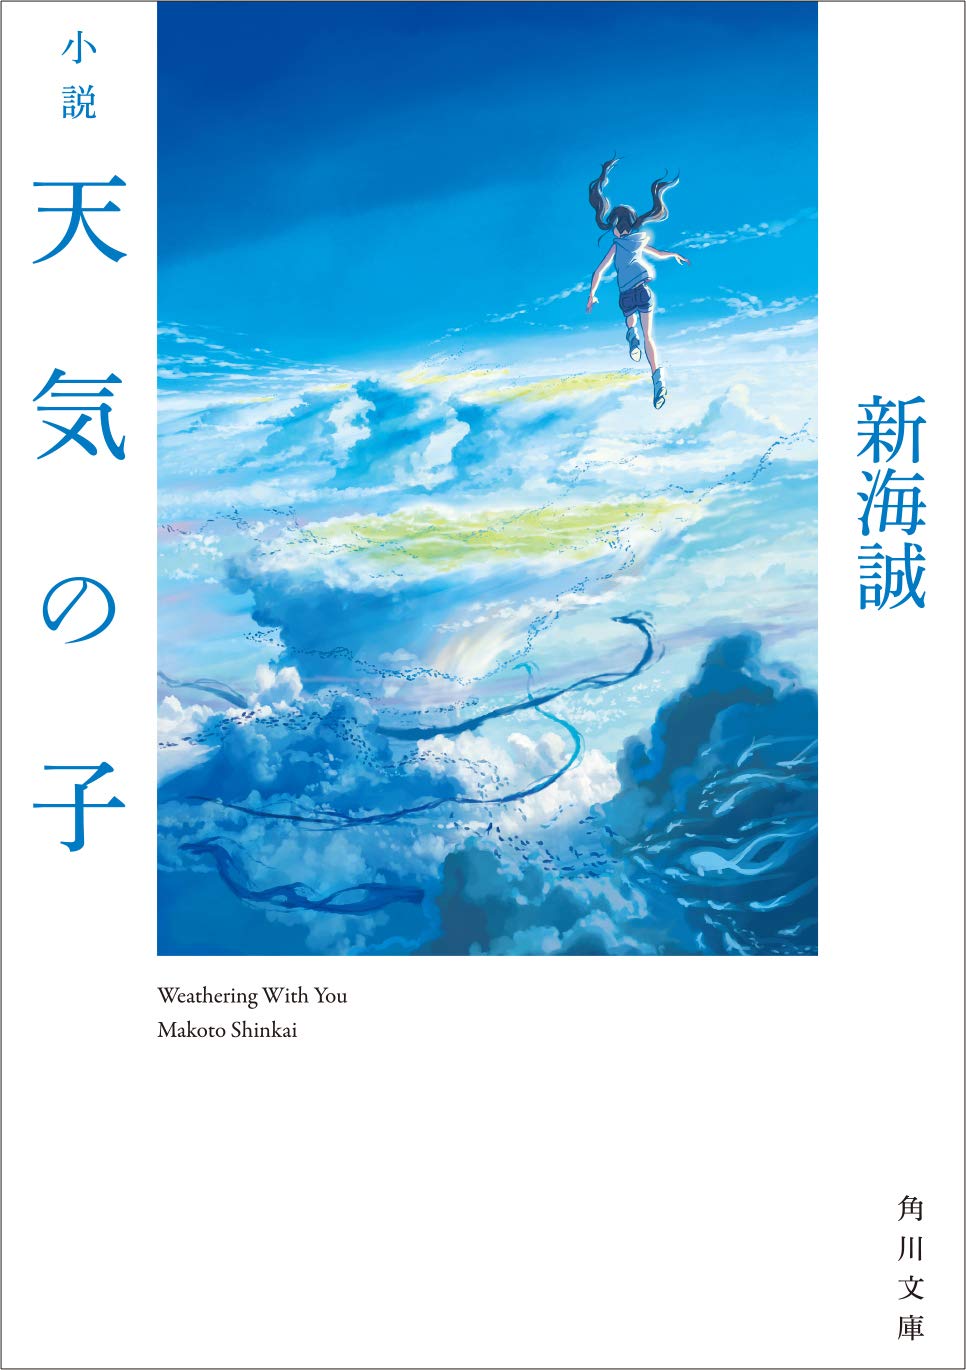 史莱姆与鬼灭之刃排名刚好互相”首尾呼应”，日本2019年度轻小说销量排行公布